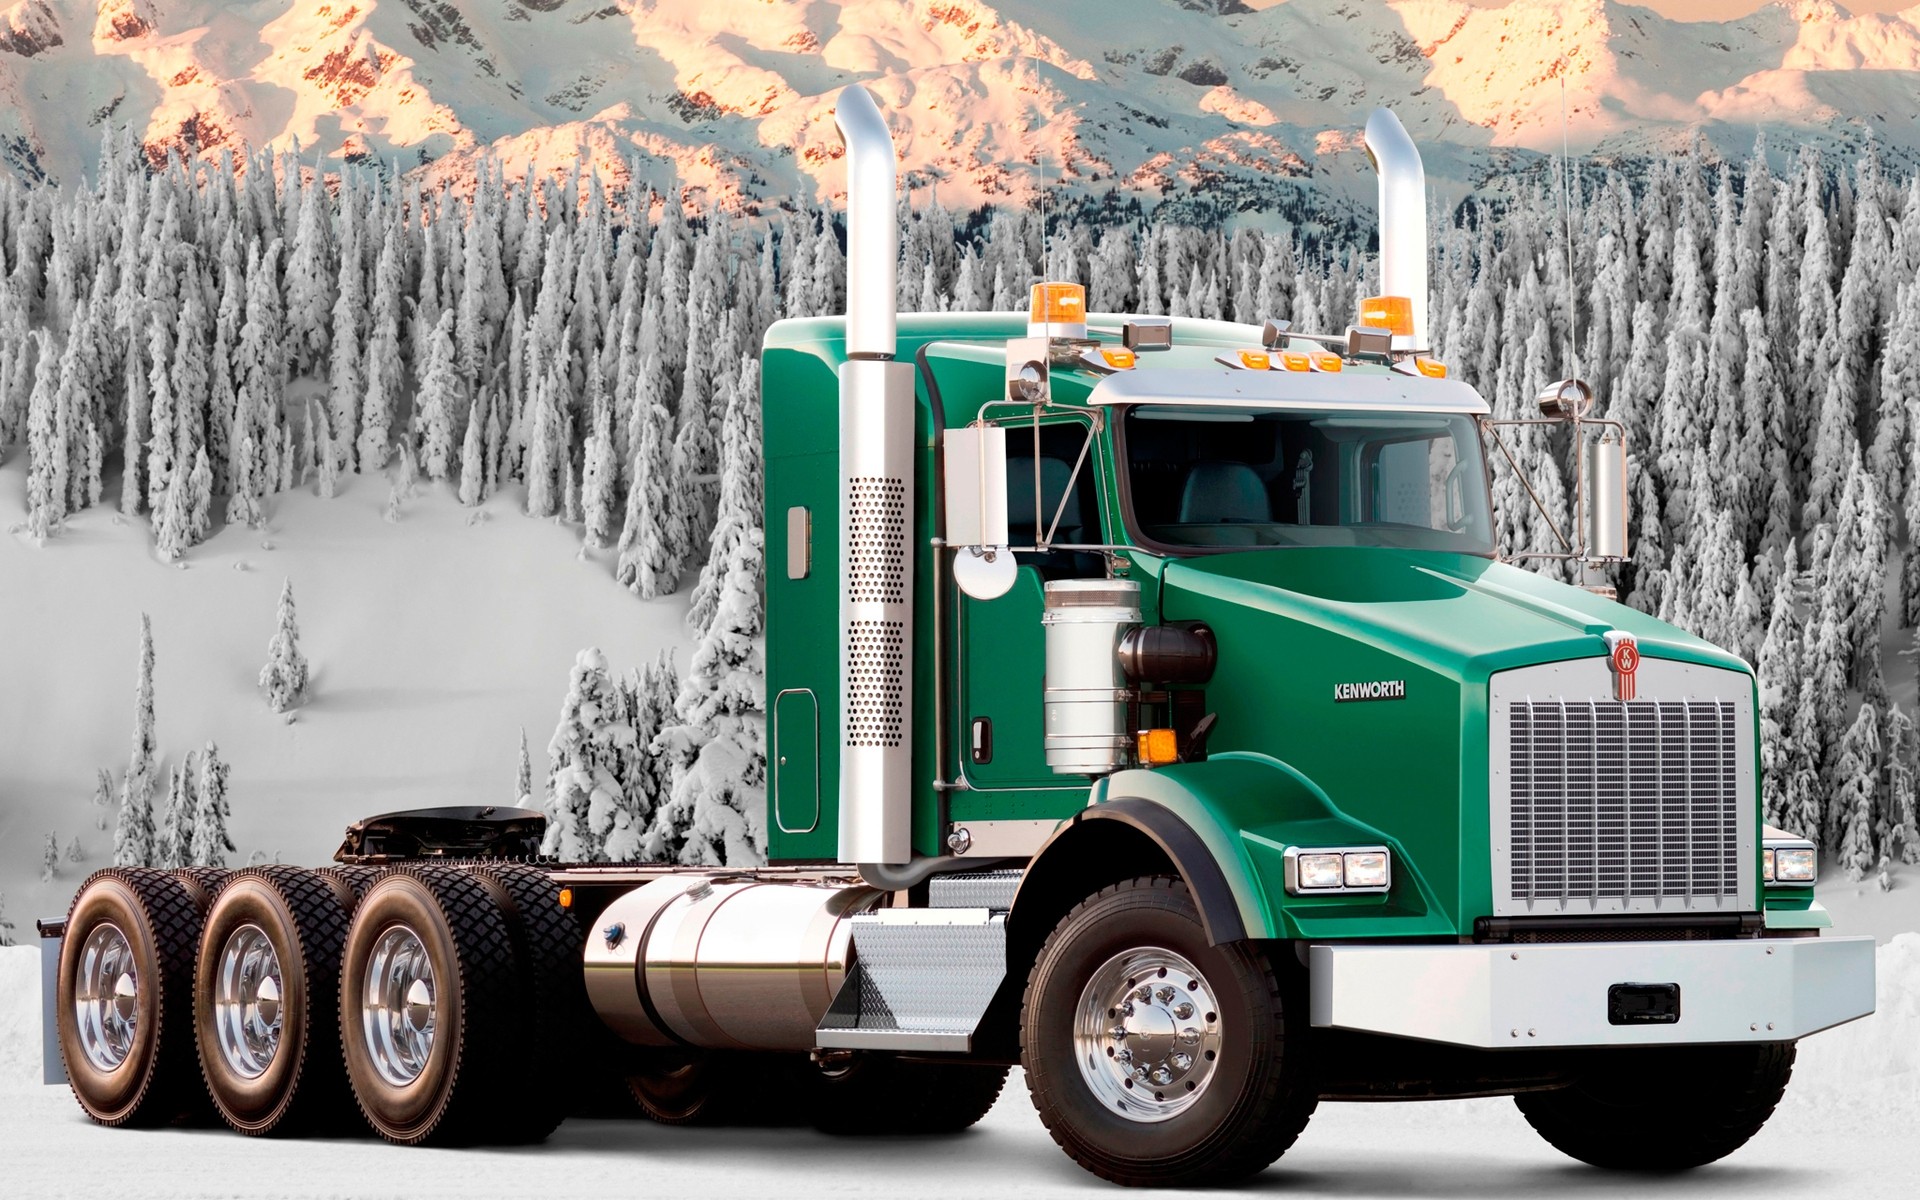 trucks автомобиль транспортная система грузовик автомобиль промышленность отгрузка тяжелые дизельный путешествия машина организация на открытом воздухе трактор дым снег двигатель лес